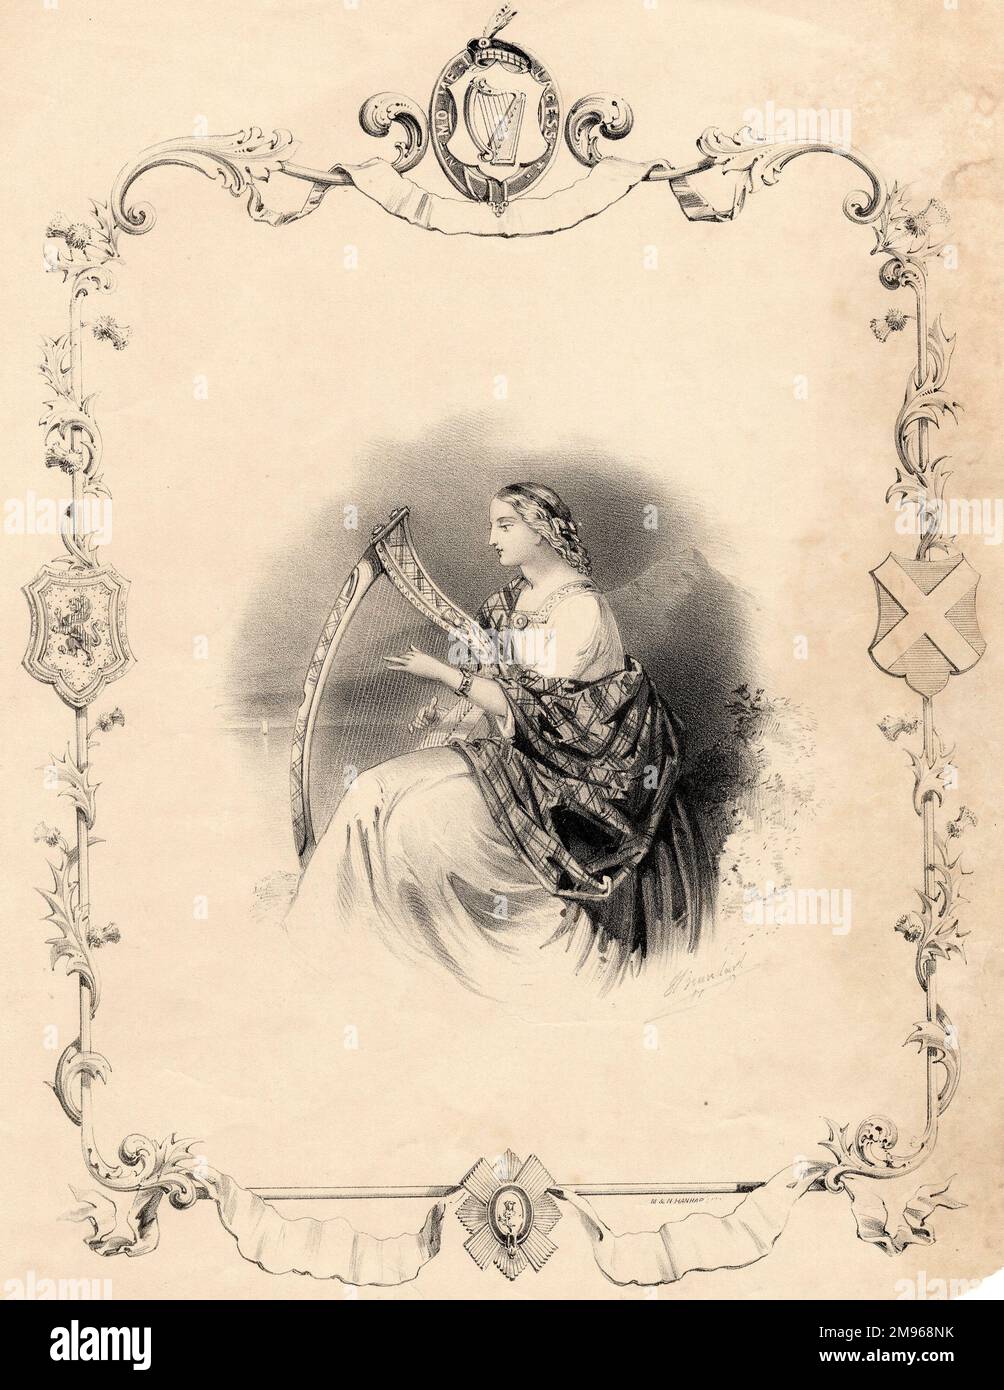 Una copertina musicale non identificata raffigurante una arpista scozzese  femminile che indossa uno scialle tartan e un costume medievale. L'emblema  in alto contiene le parole latine, Nemo Me Impune Lacessit, che è